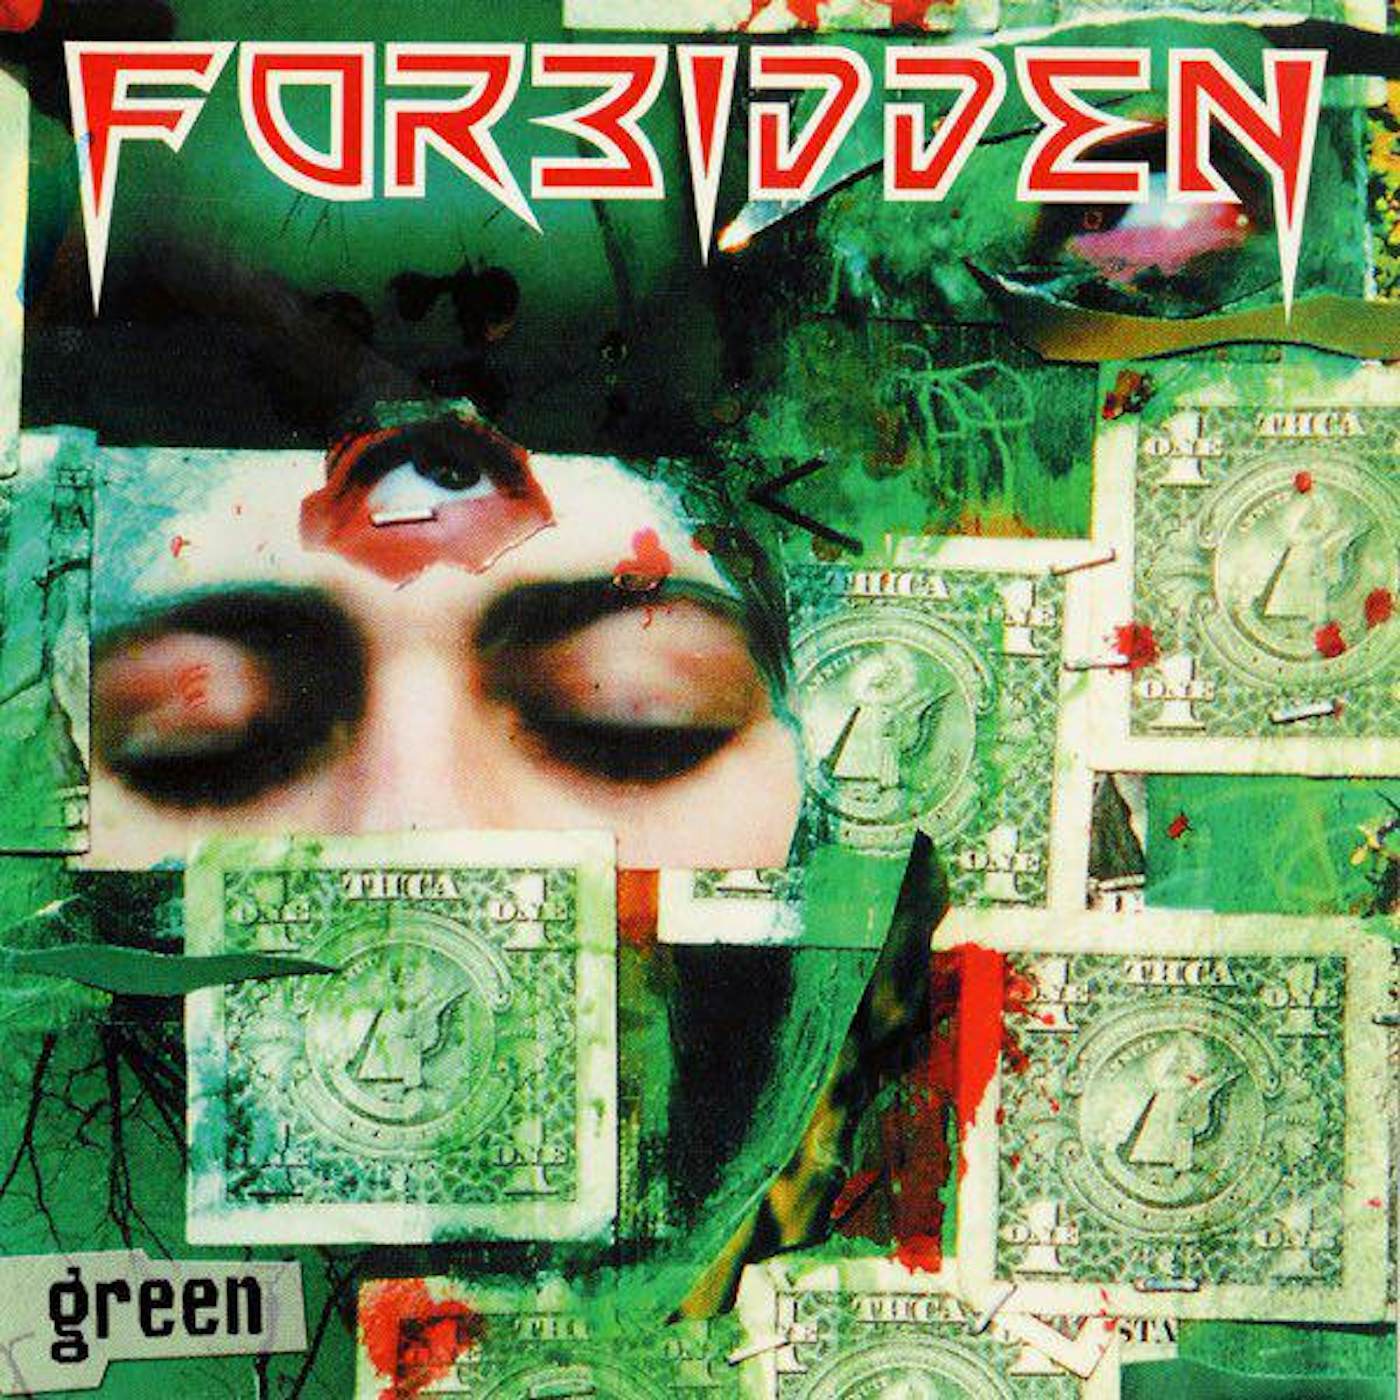 Forbidden Green (Green) Vinyl Record